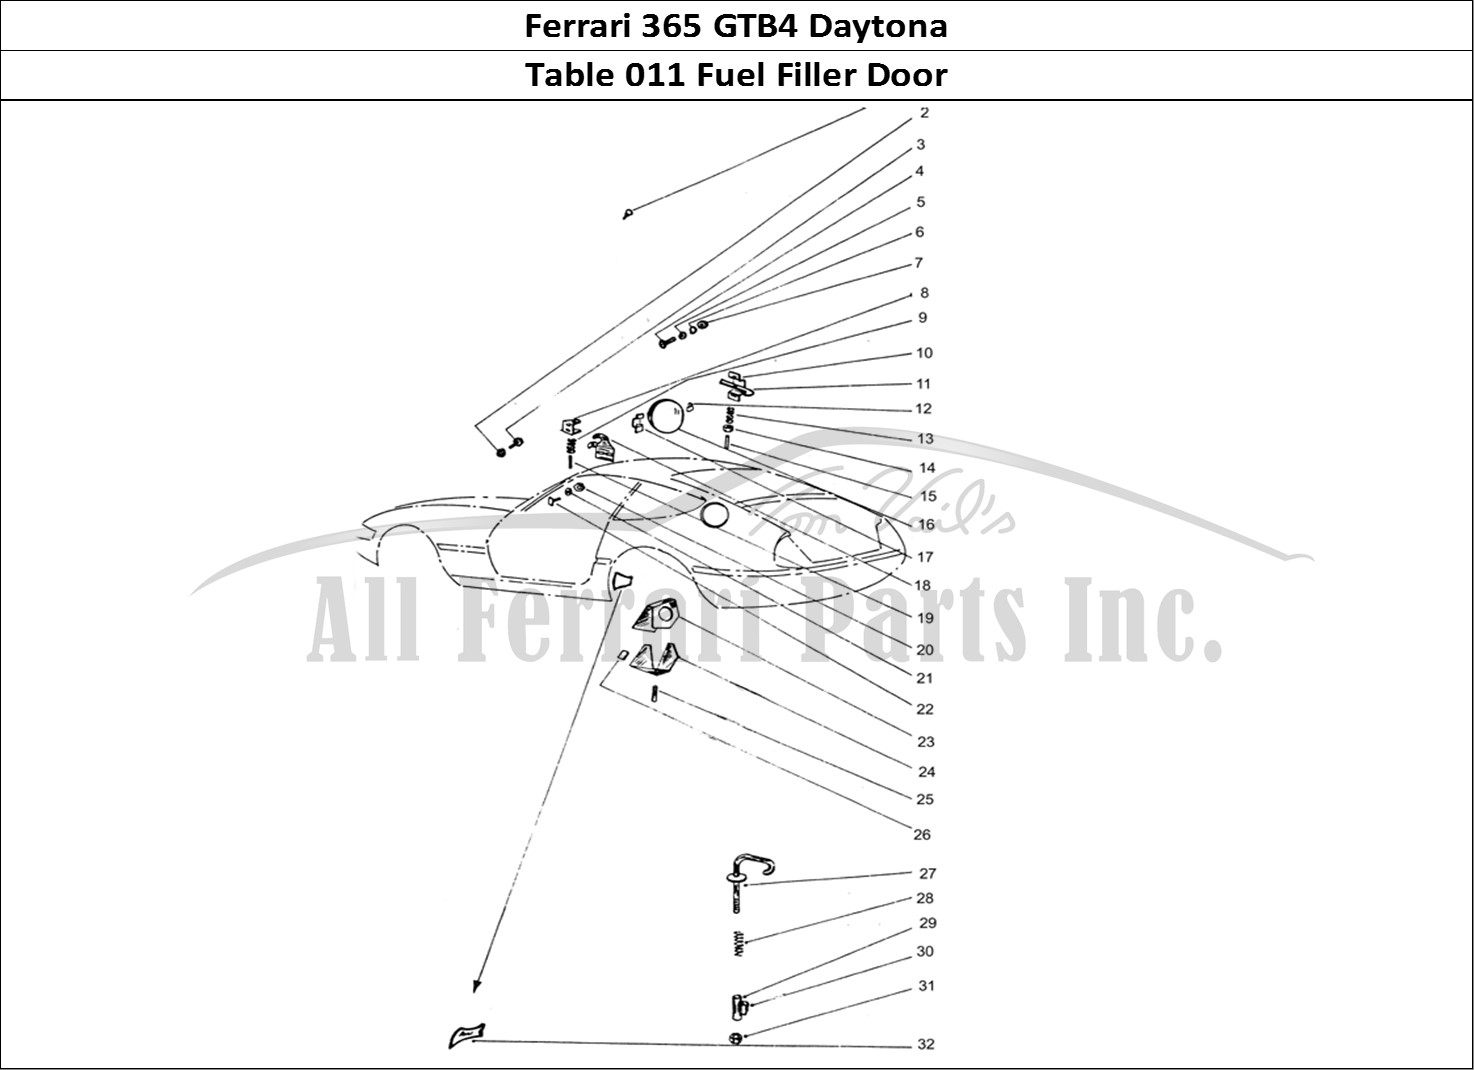 Ferrari Parts Ferrari 365 GTB4 Daytona (Coachwork) Page 011 Fuel filler cap